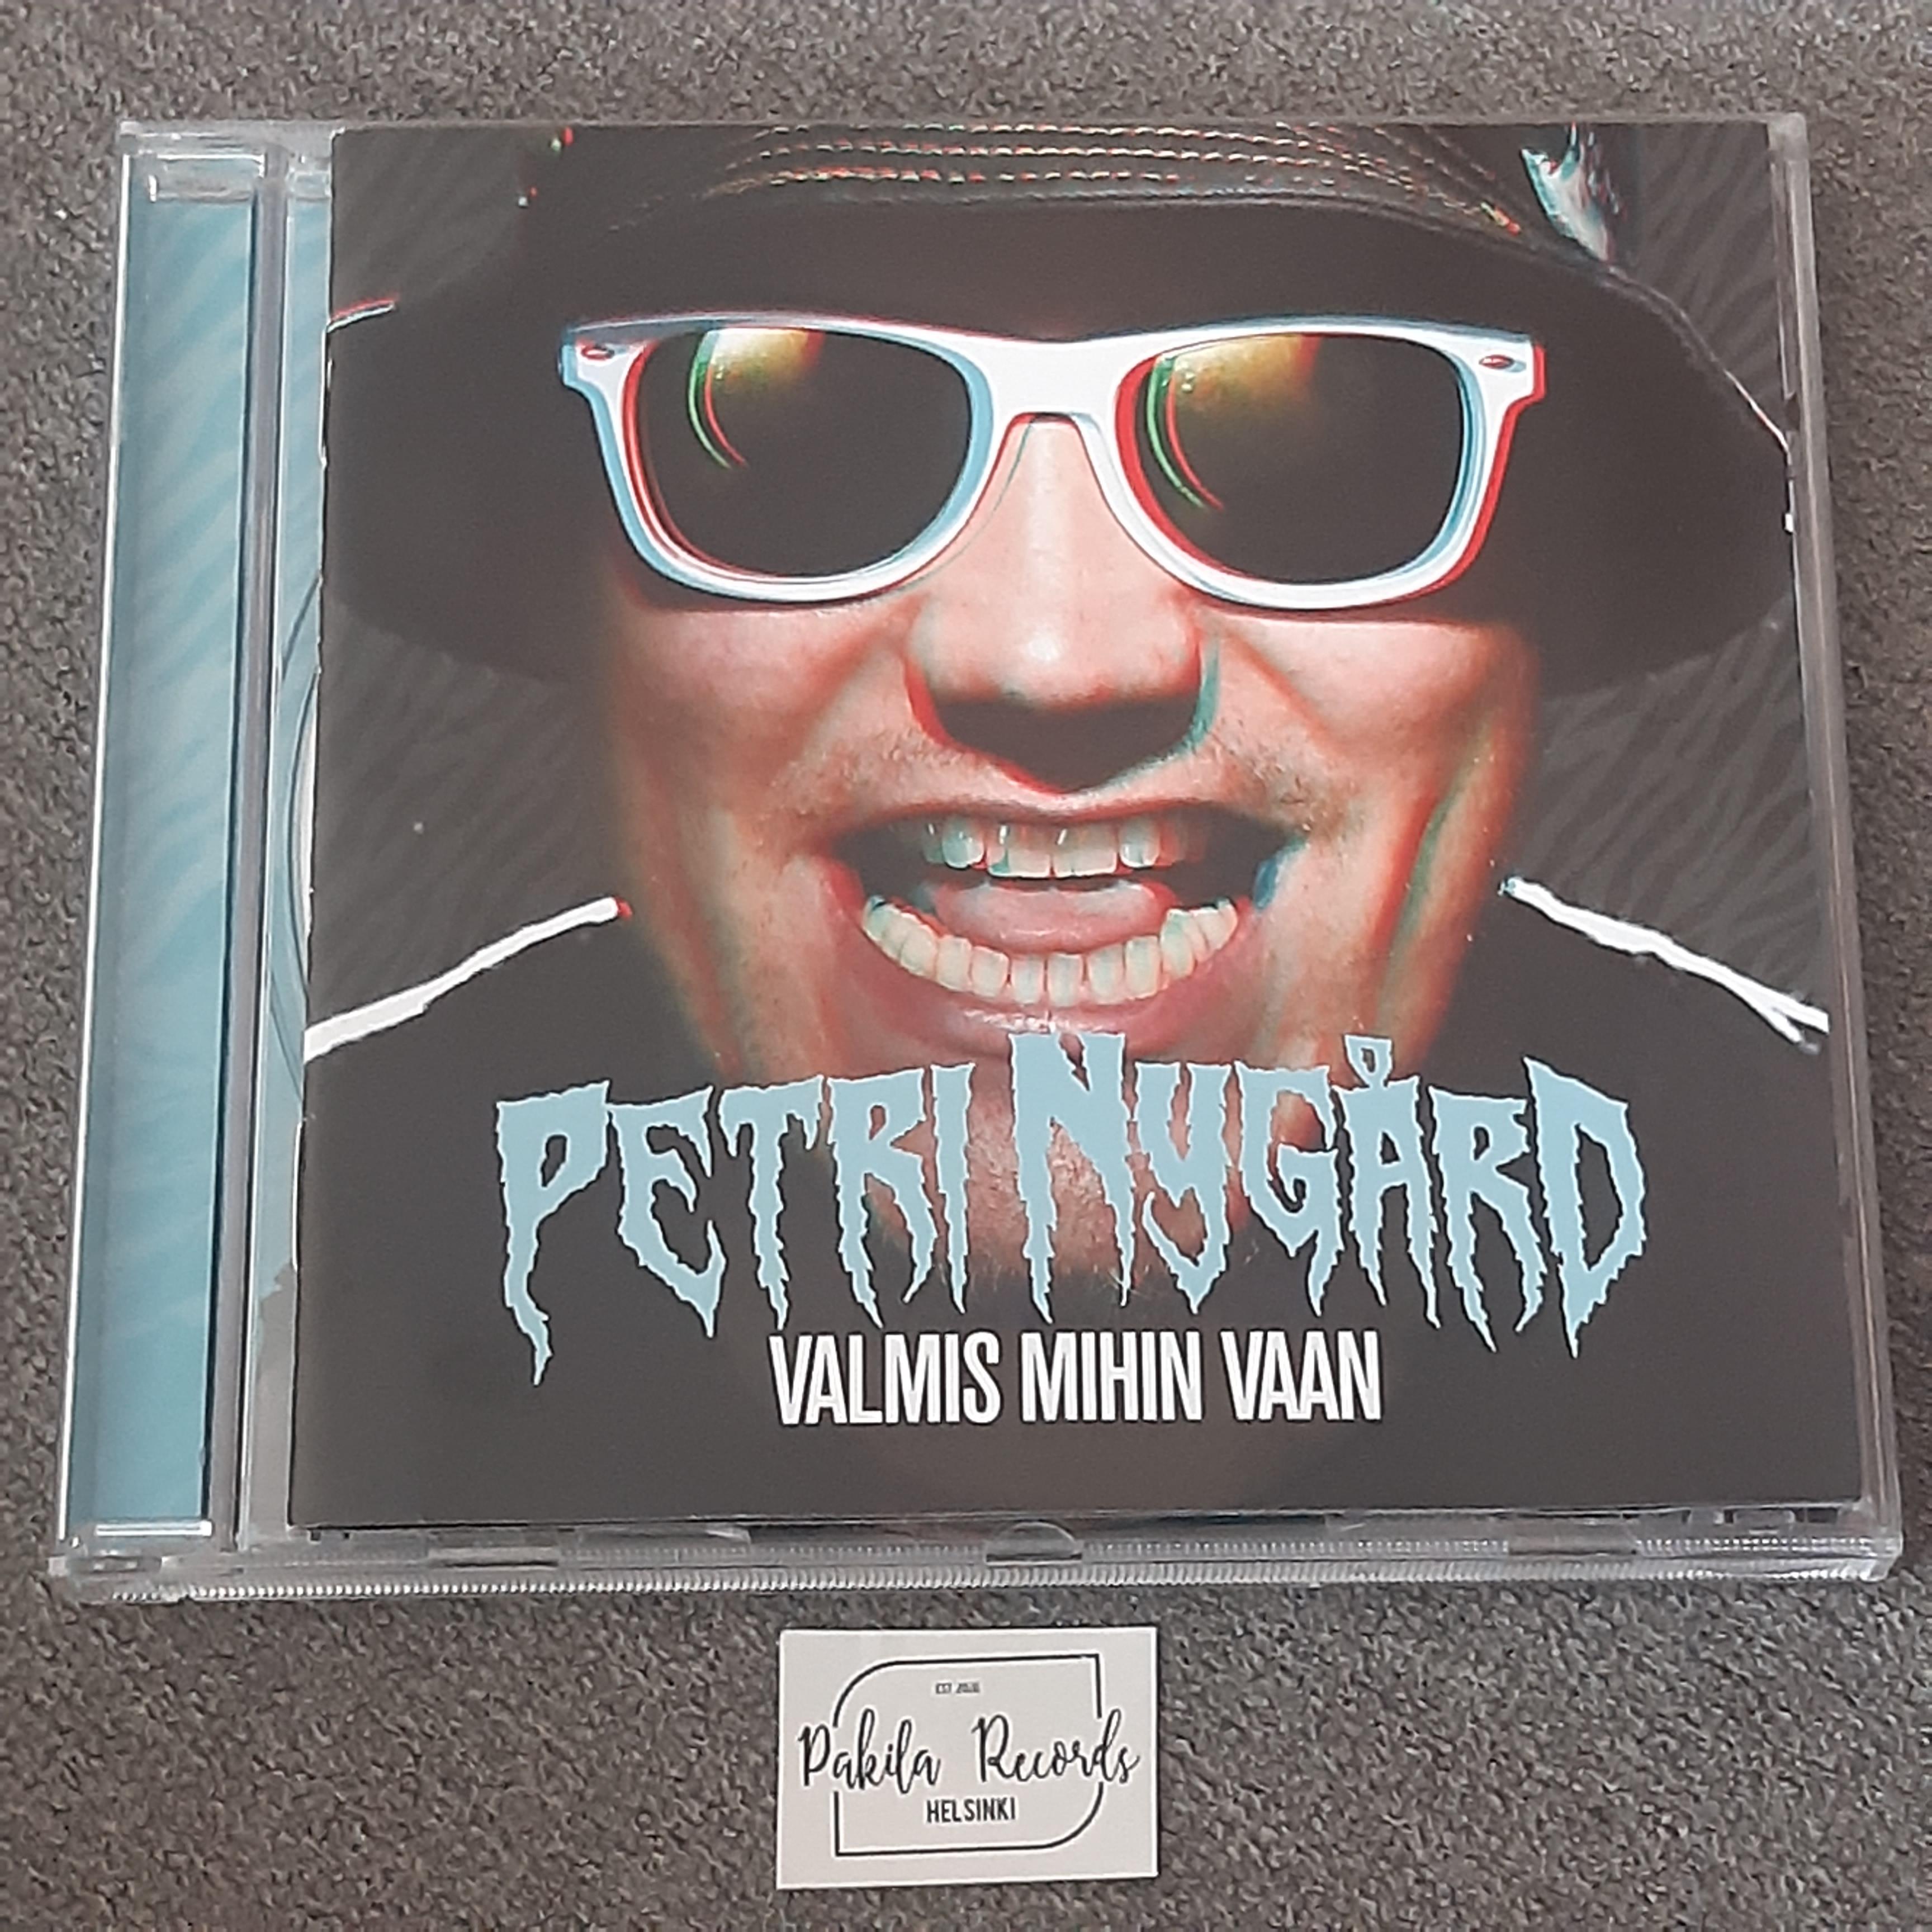 Petri Nygård - Valmis mihin vaan - CD (käytetty)